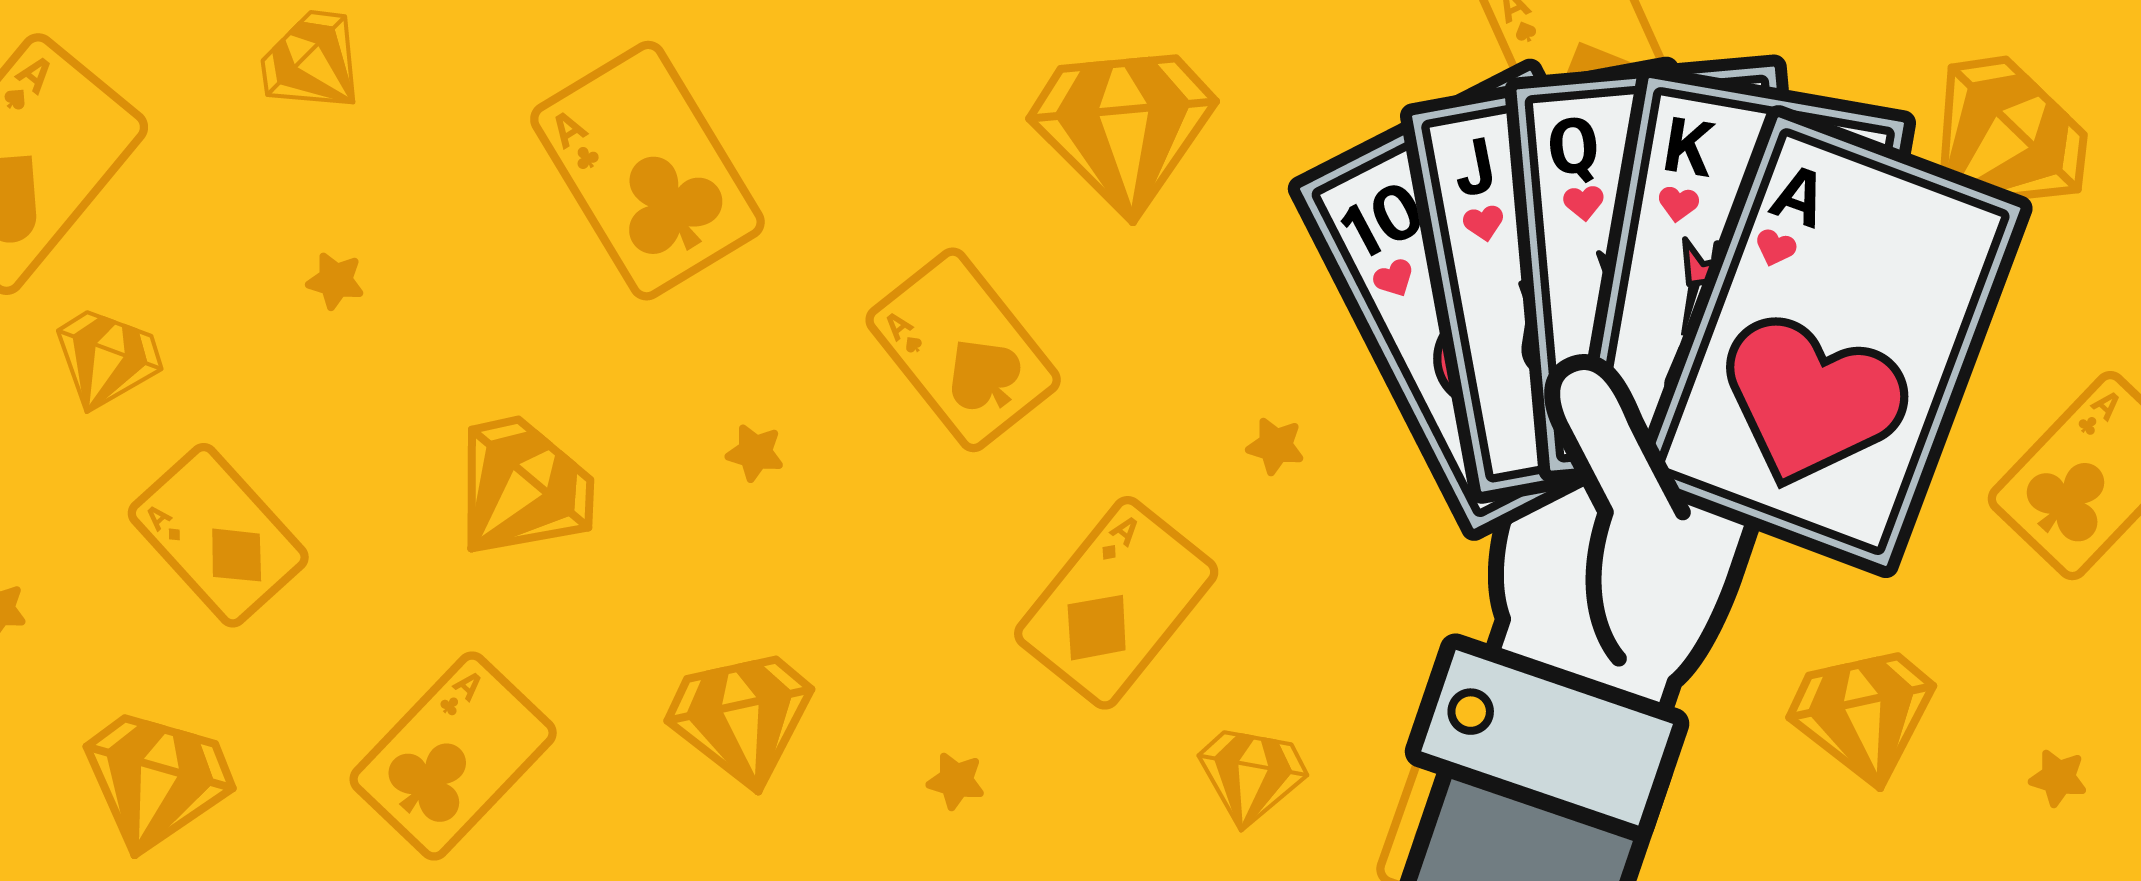 Pokerivinkit - Pelaa vahvat kätesi nopeasti kasvattaaksesi pottia